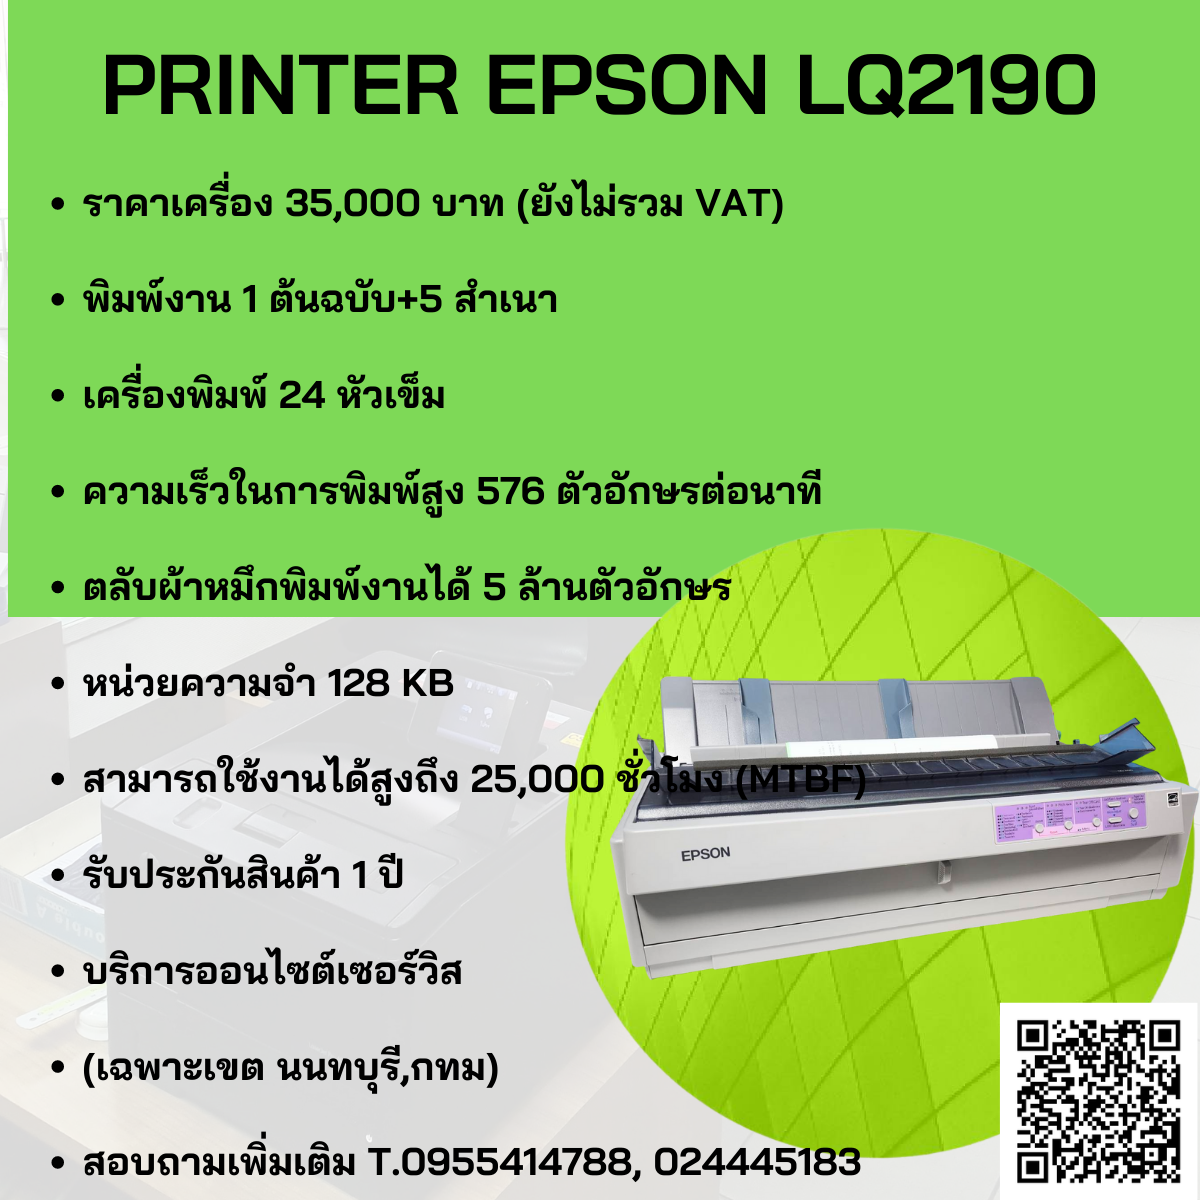 PRINTER EPSON LQ2190 New